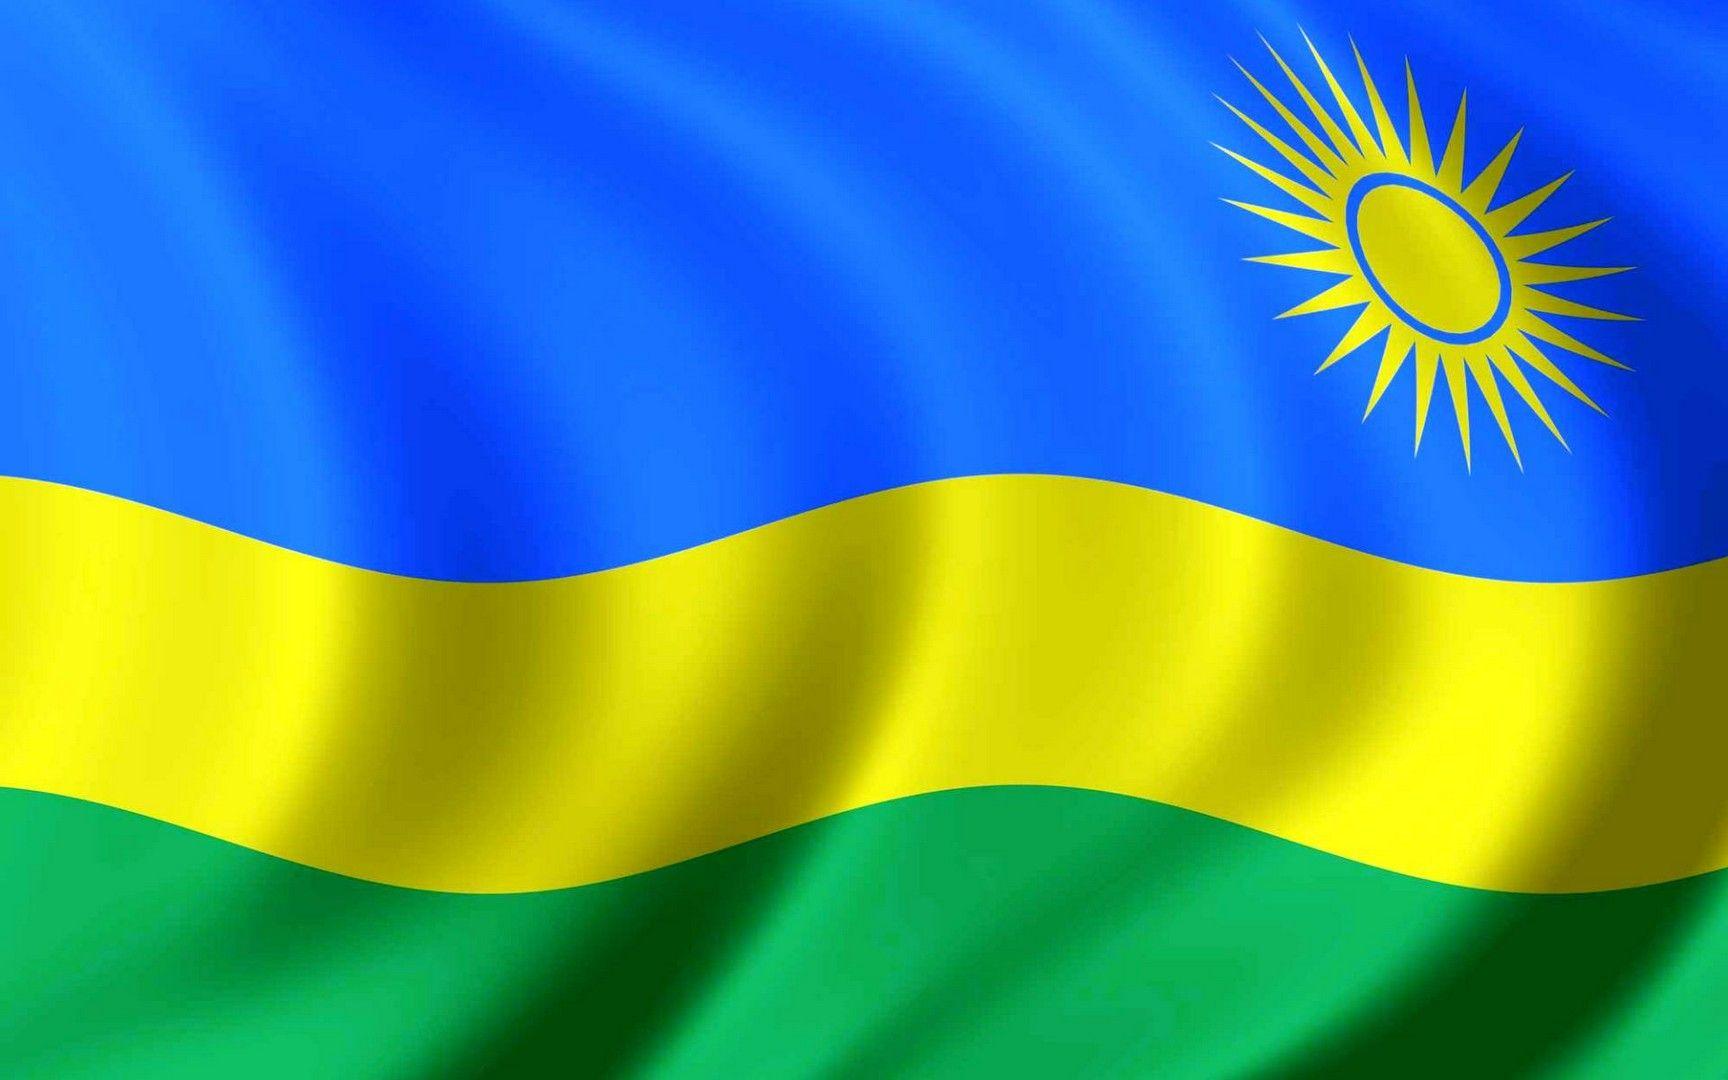 Flag of Rwanda wallpaper. Education. Rwanda flag